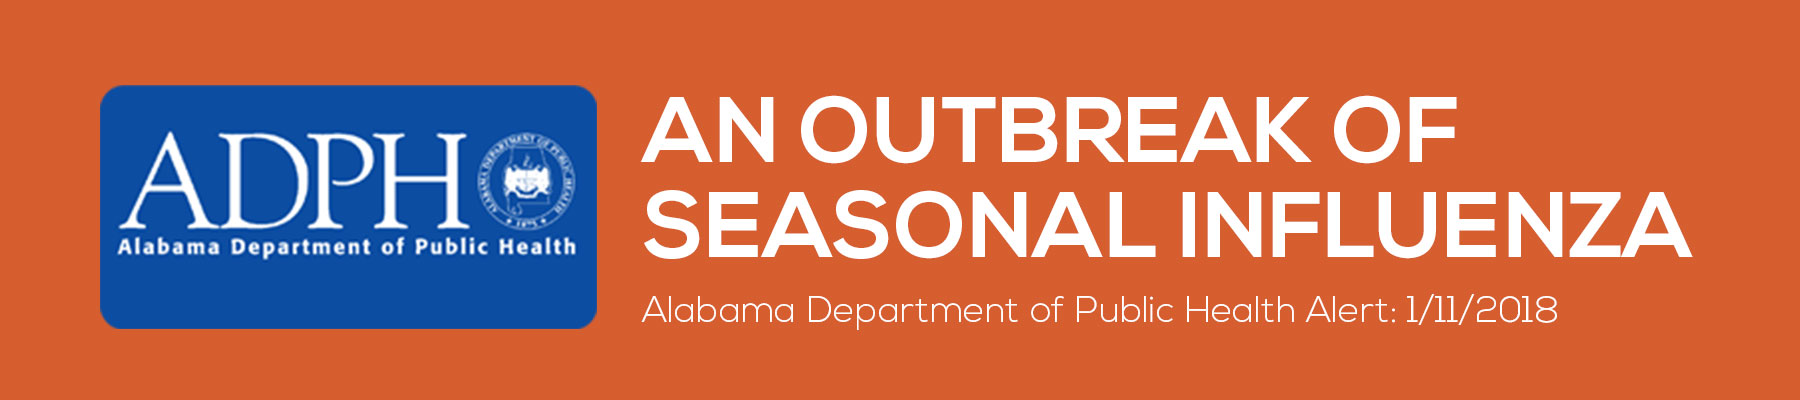 alabama department of public health. An outbreak of seasonal influenza health alert 1/11/2018